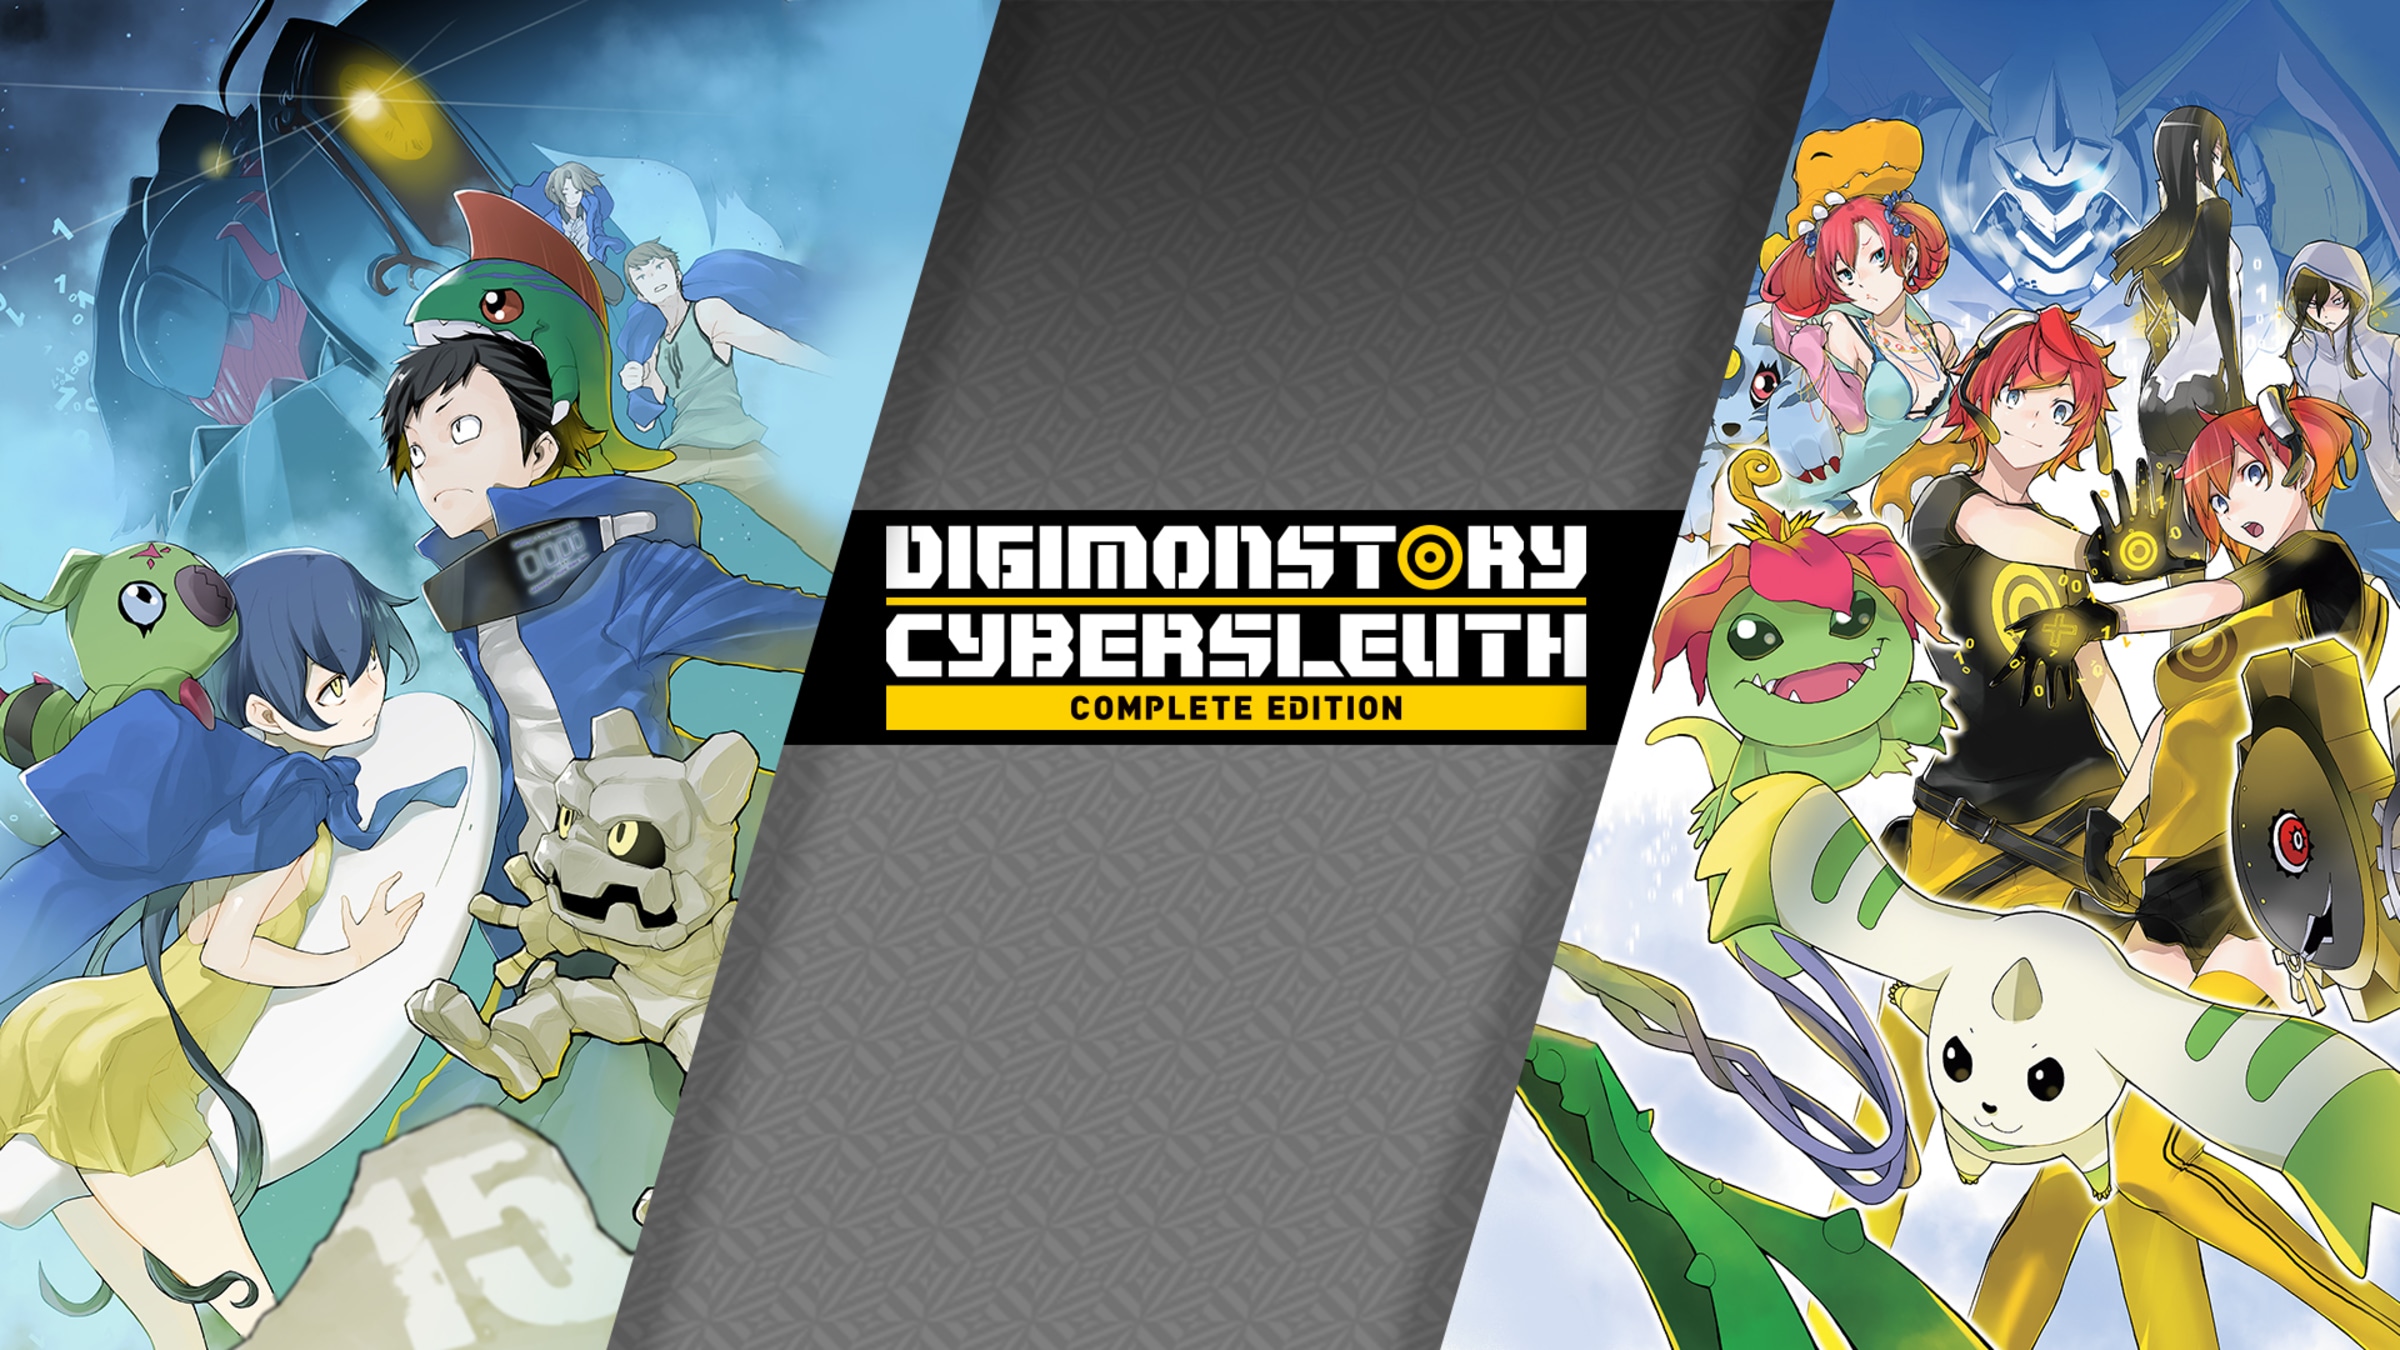 Digimon Survive - Nintendo Switch, Juegos Digitales Chile